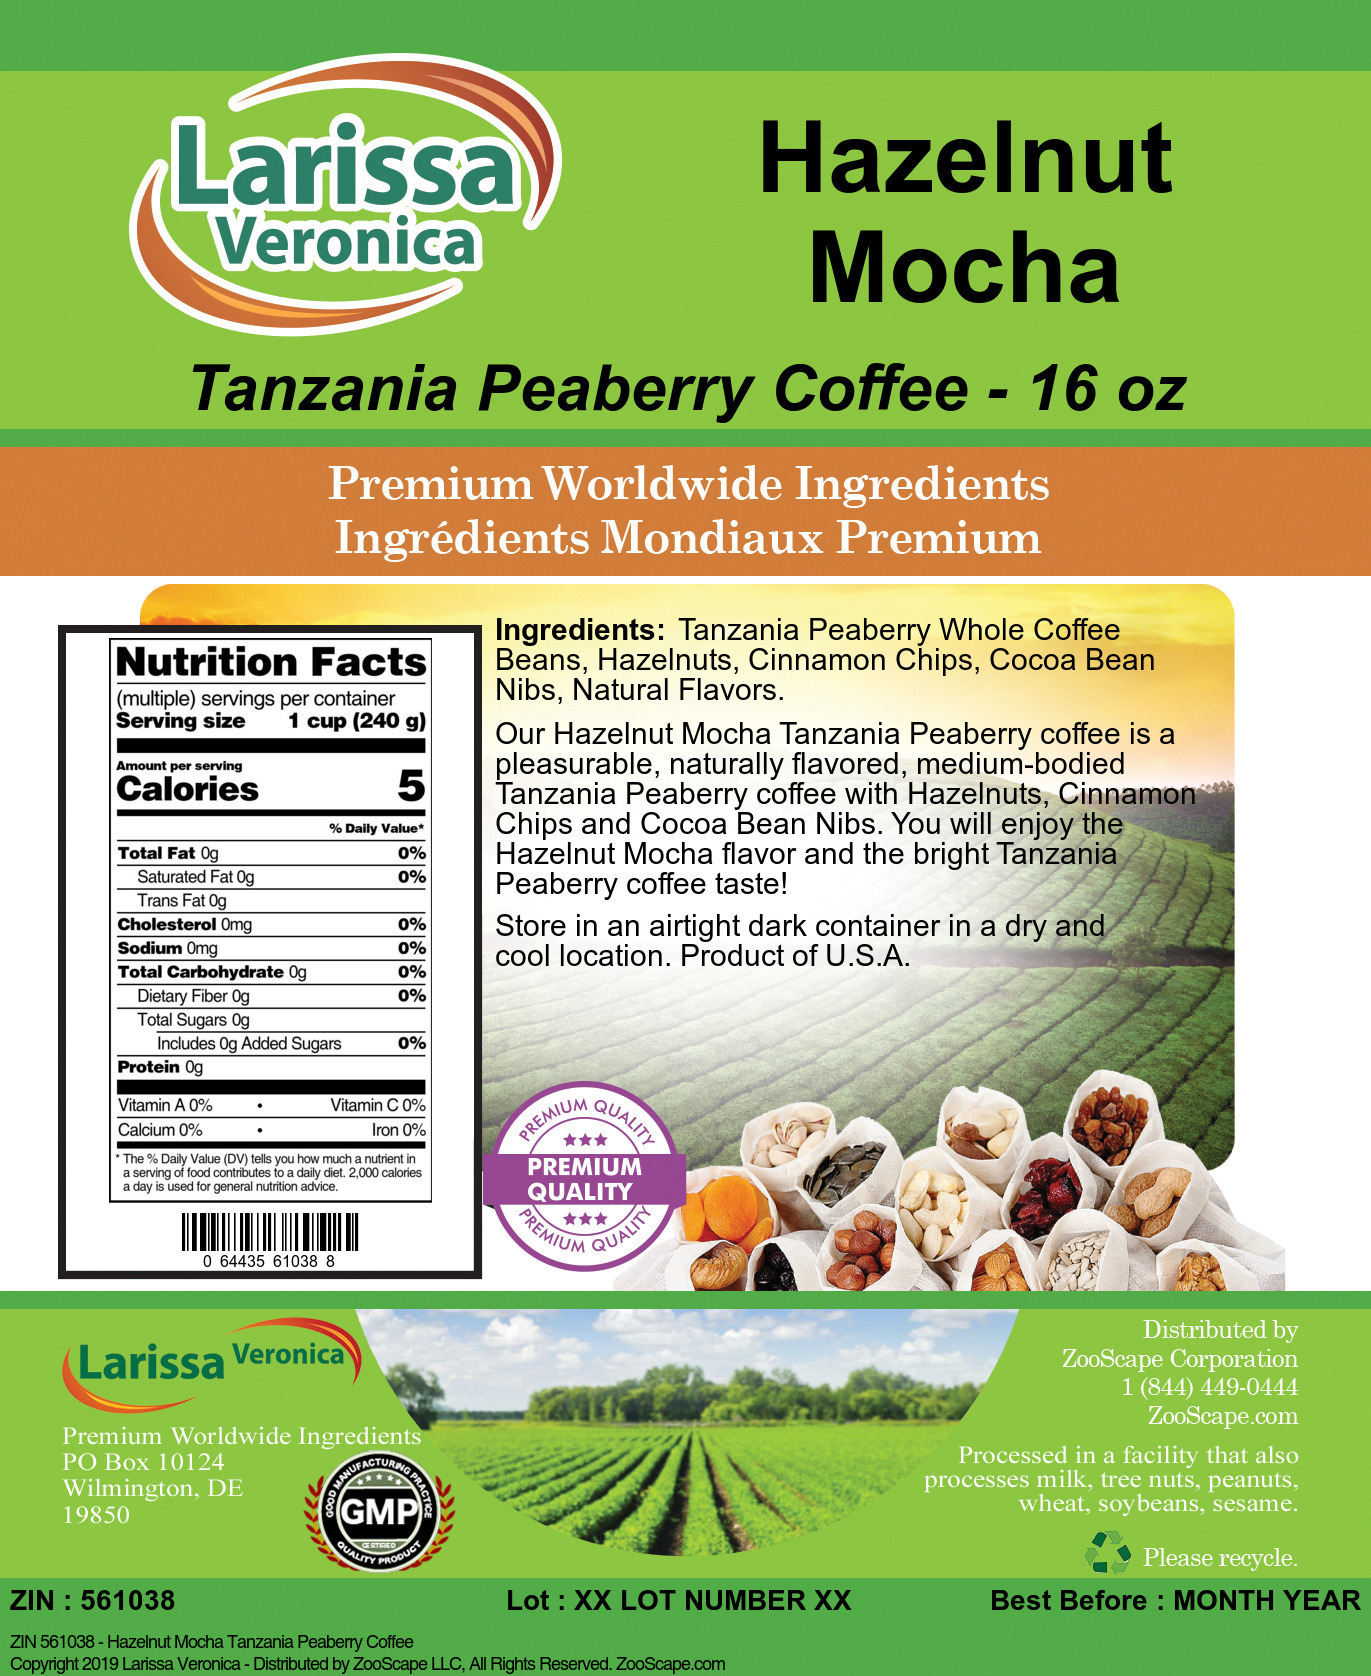 Hazelnut Mocha Tanzania Peaberry Coffee - Label